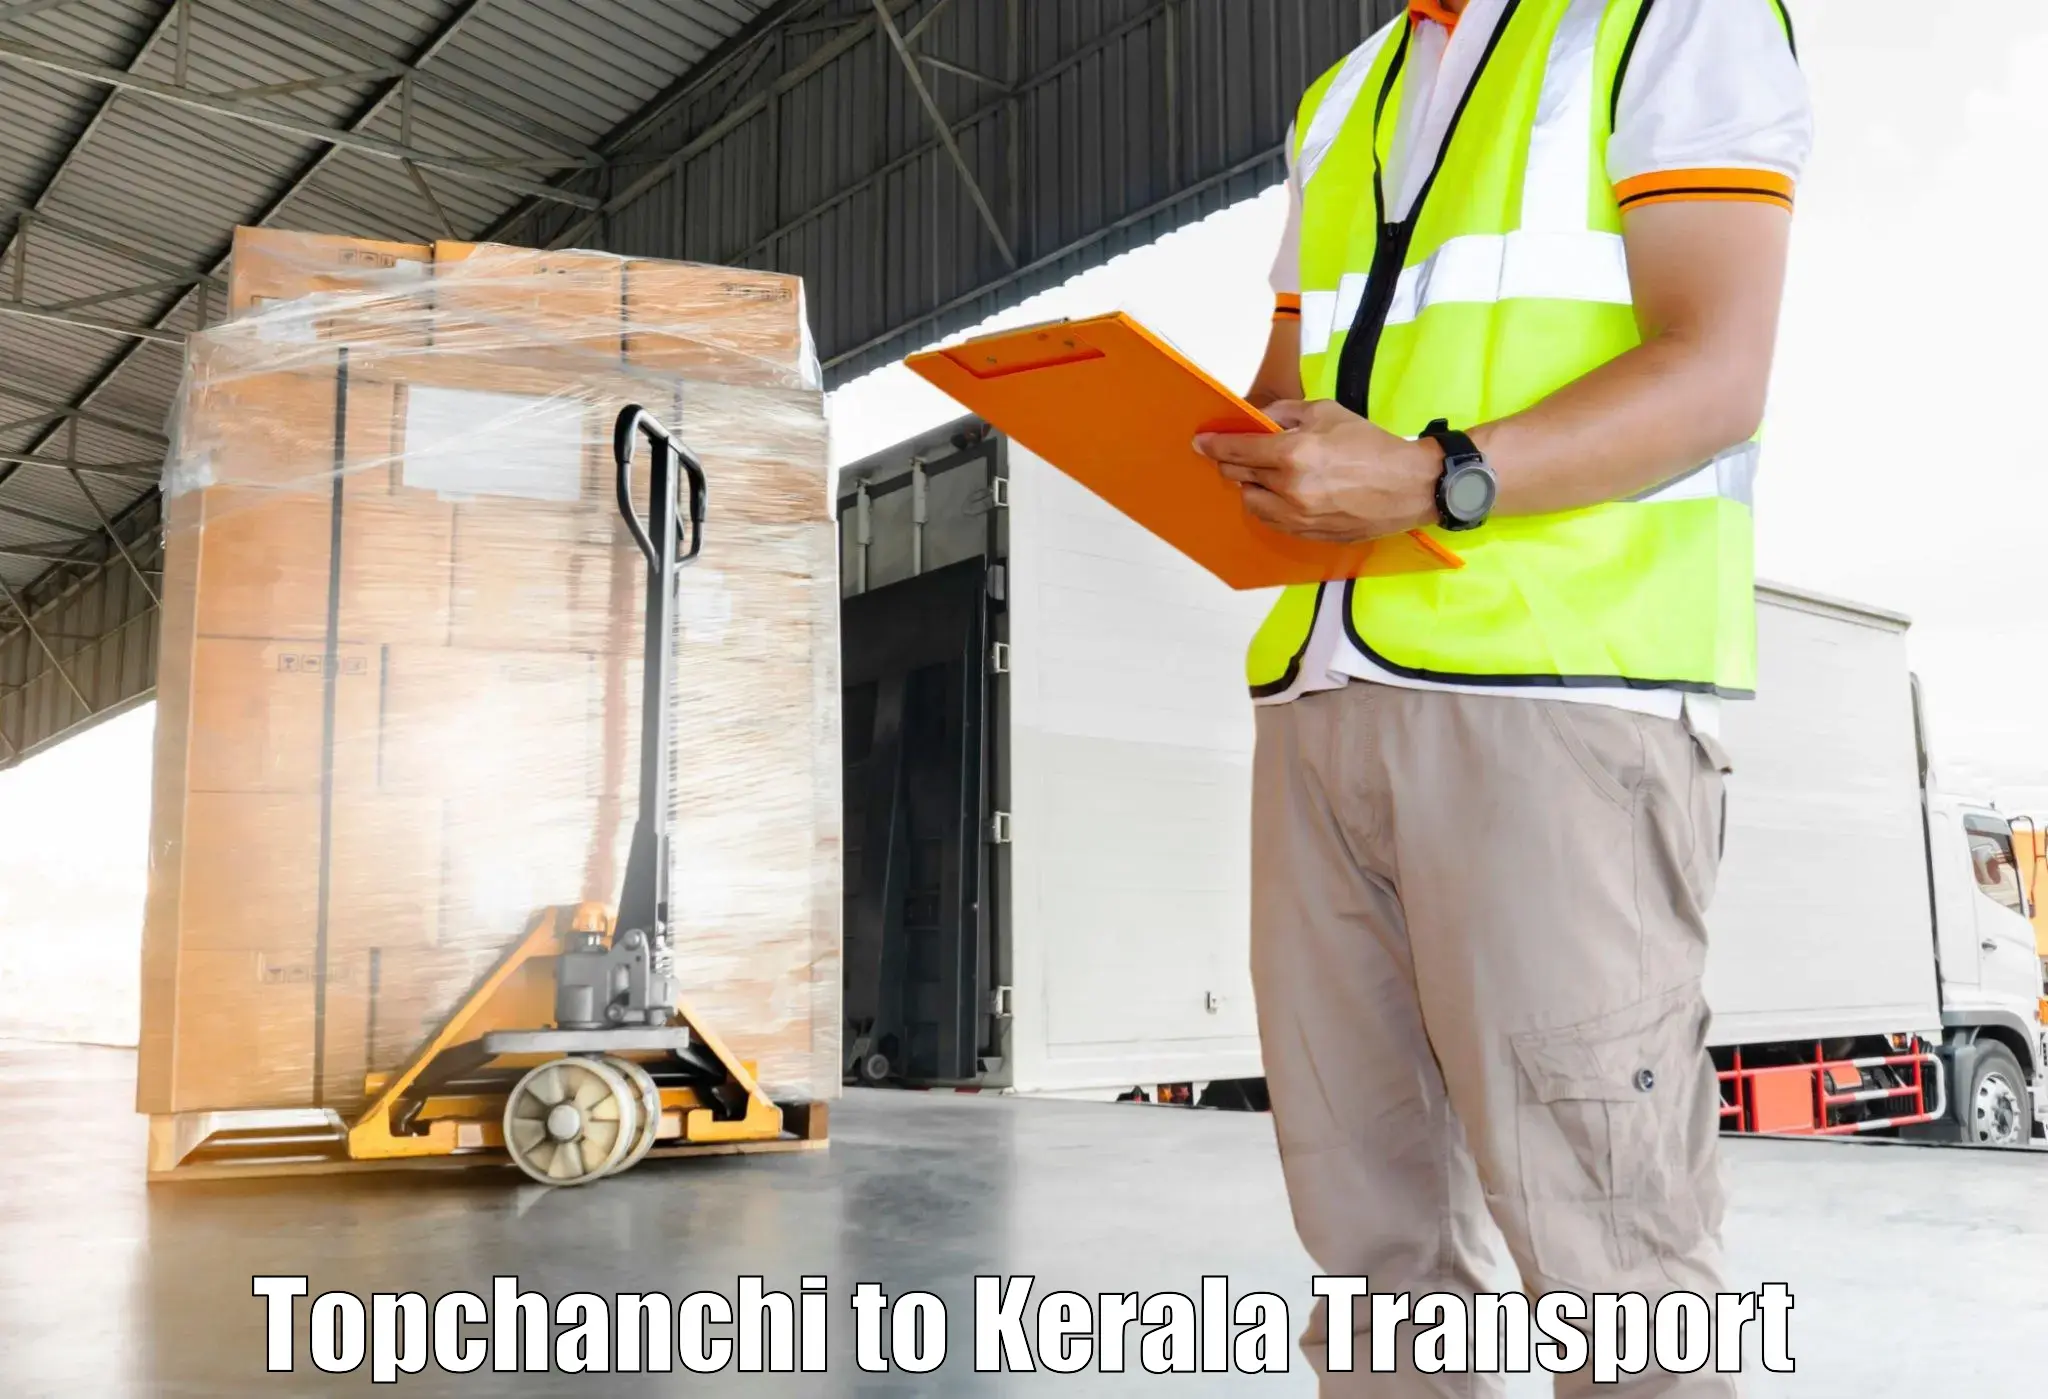 Furniture transport service Topchanchi to Kazhakkoottam